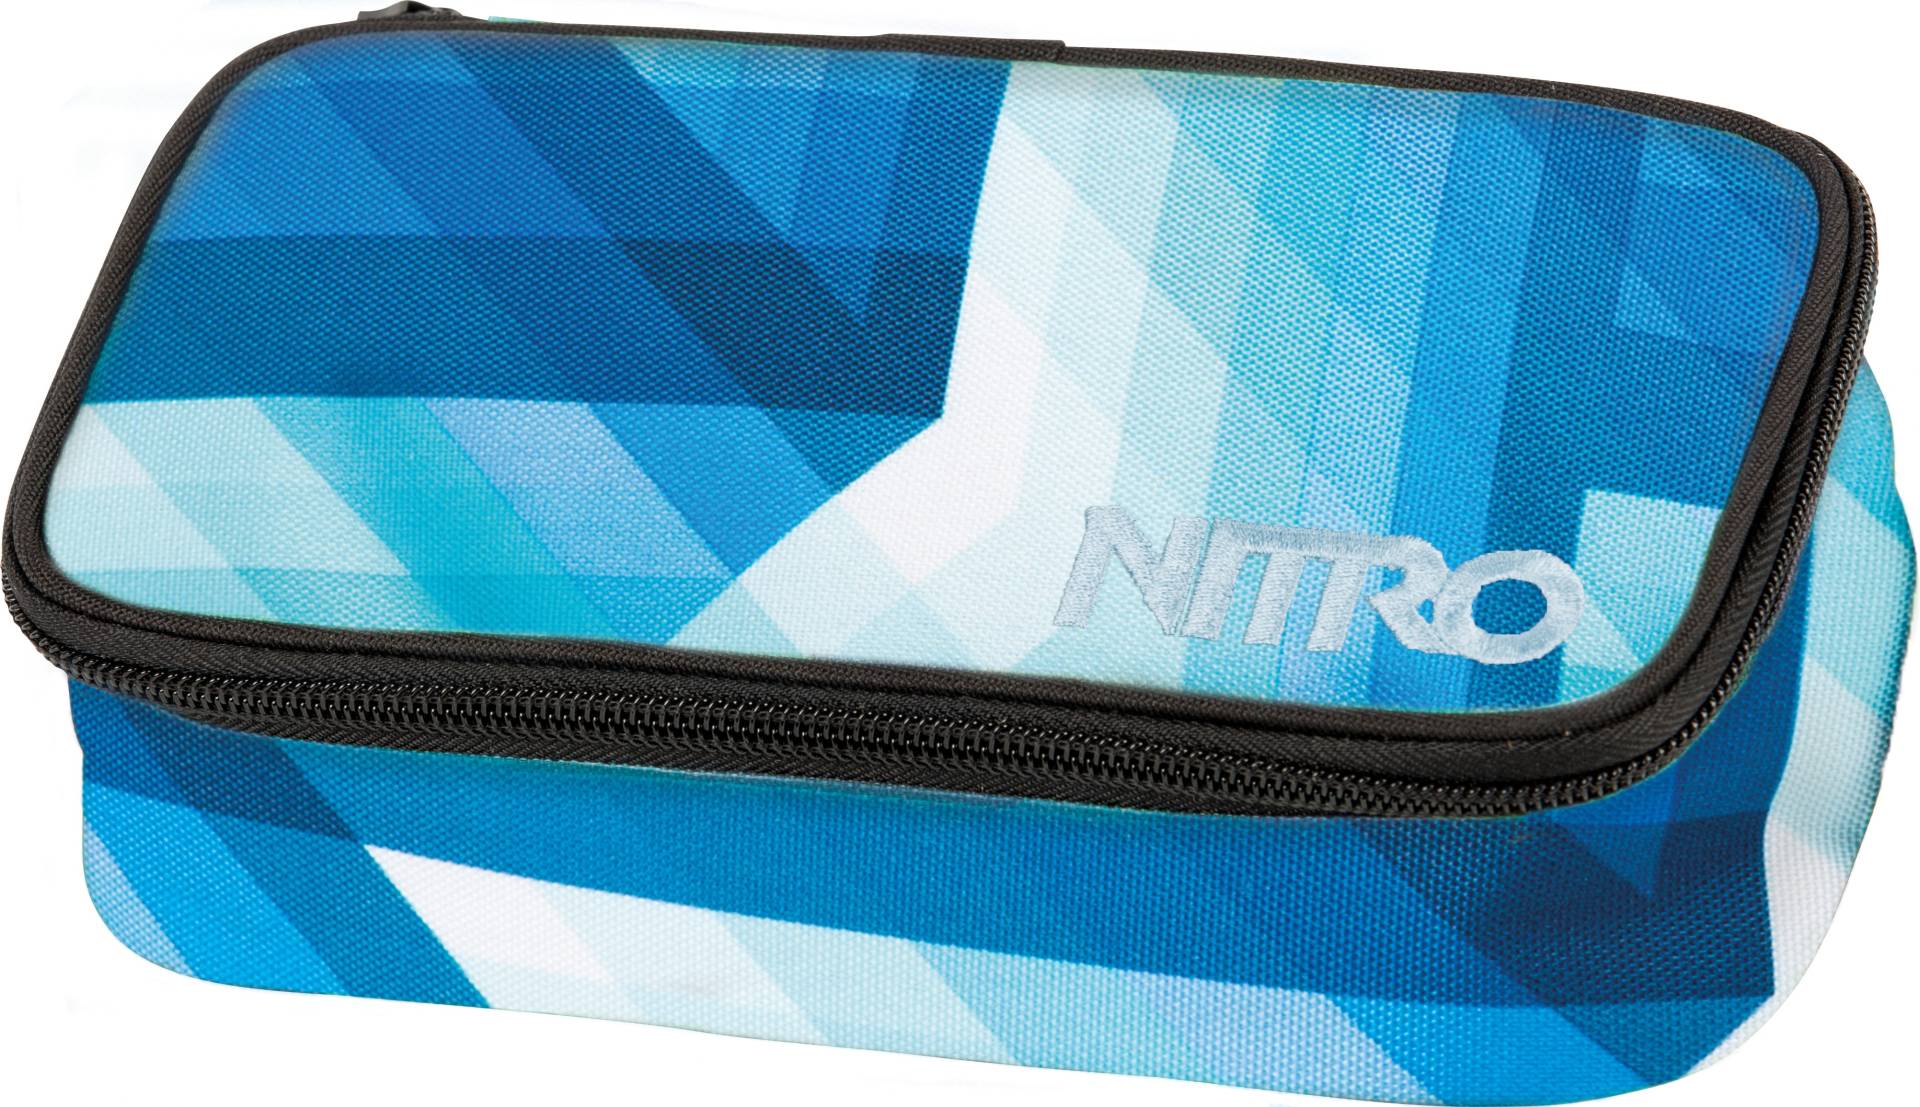 NITRO Federtasche »Pencil Case XL« von Nitro